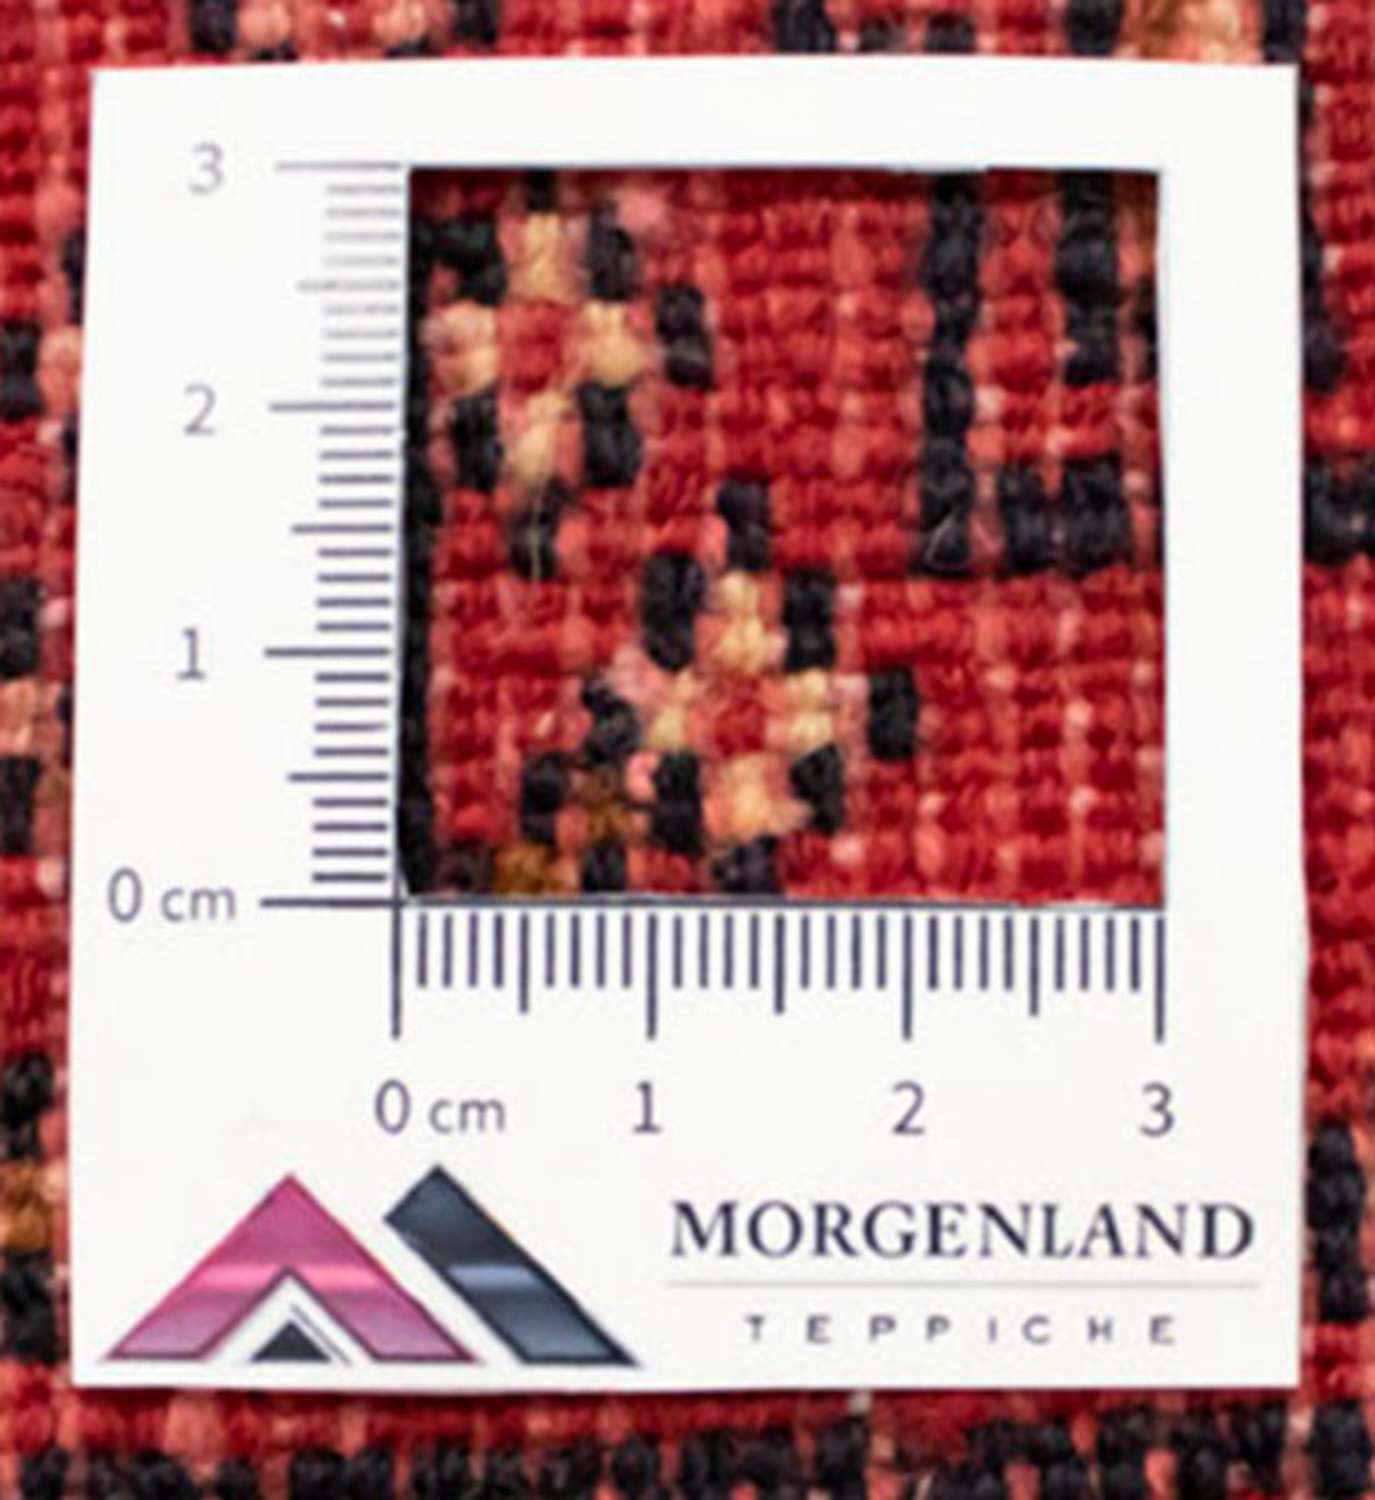 Loper Turkaman tapijt - 100 x 50 cm - rood